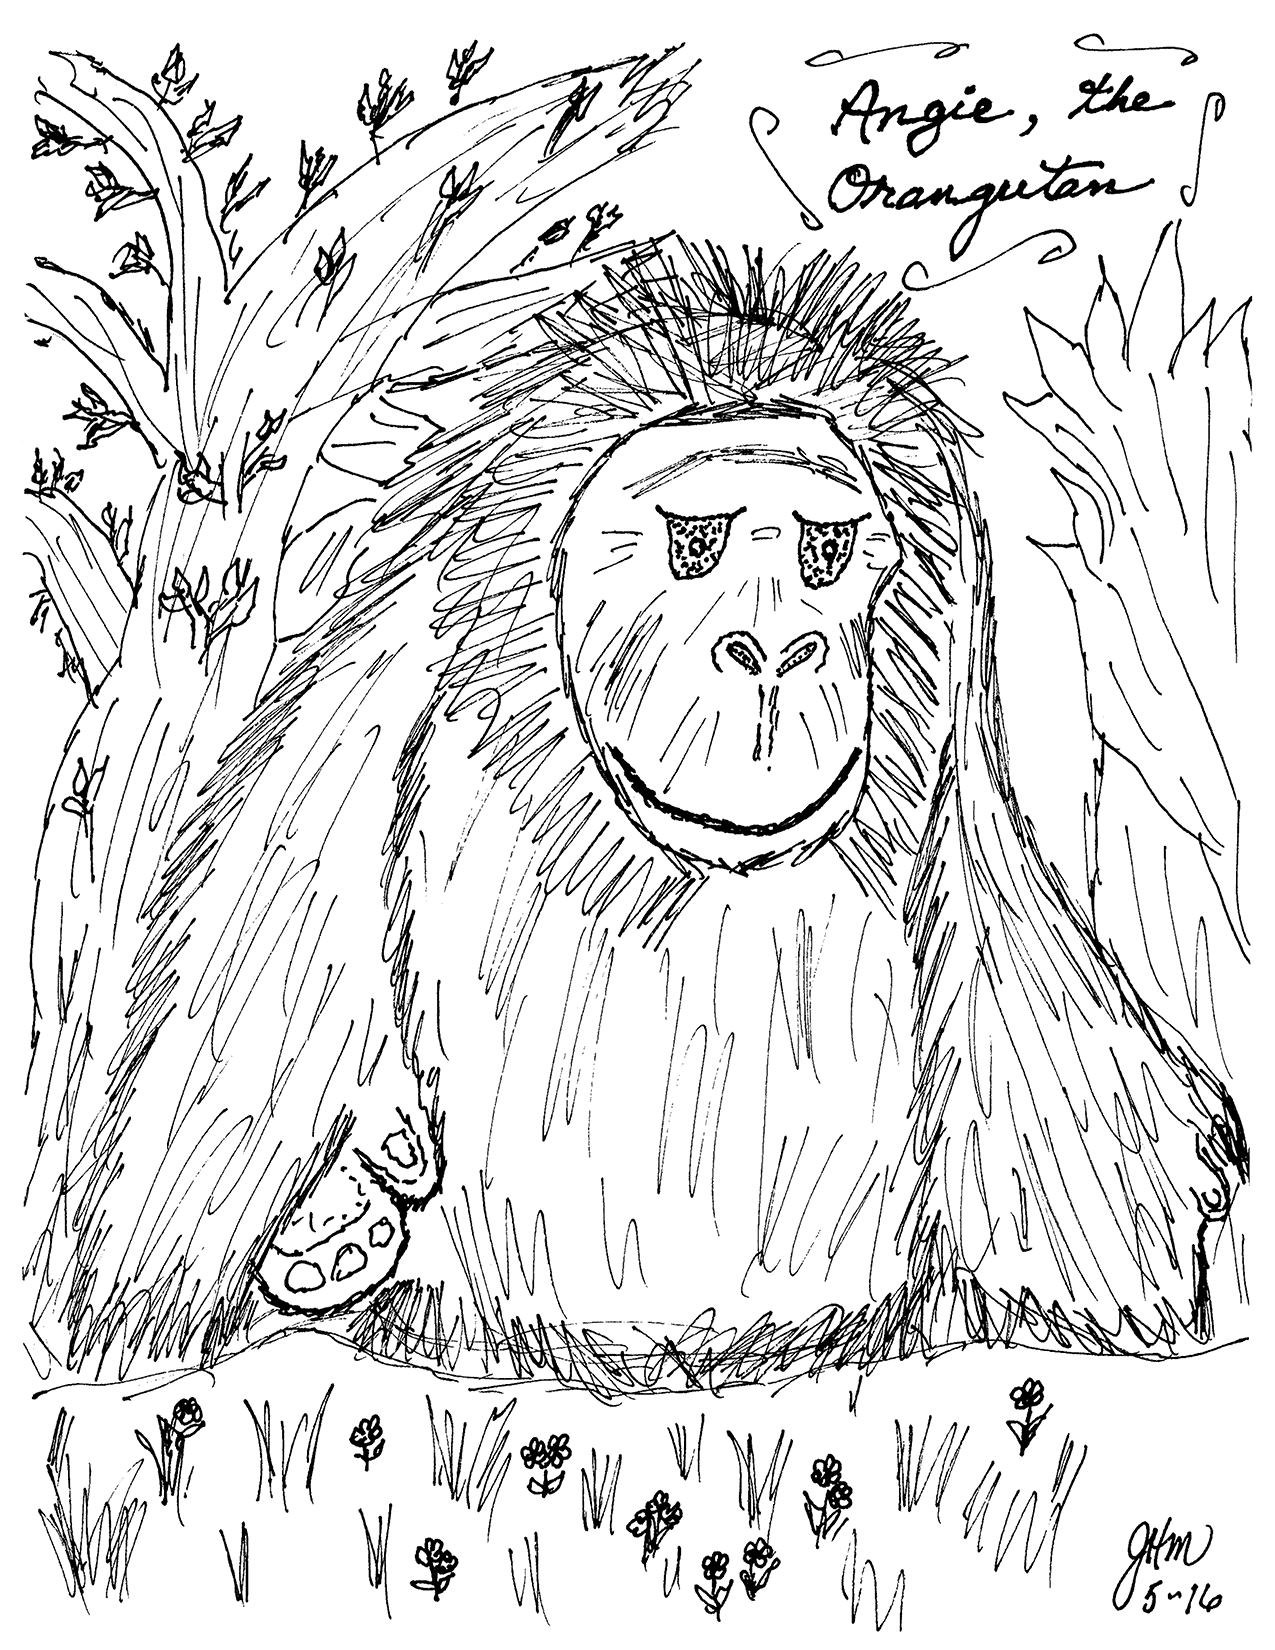 Angie the Orangutang